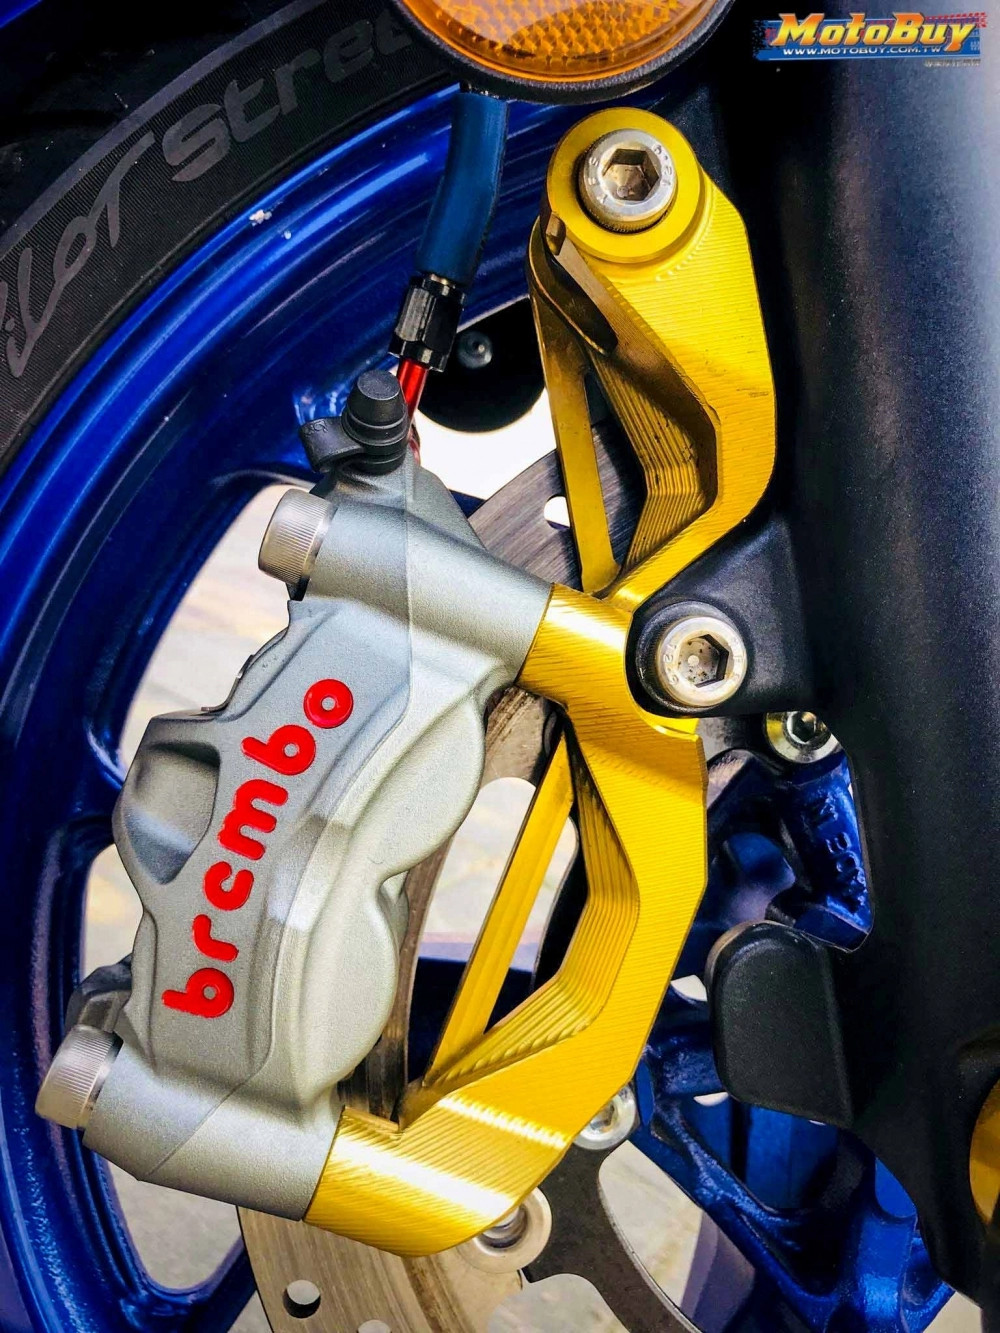 Yamaha r3 bản độ chuẩn mực với sức hút khó cưỡng từ biker đài loan